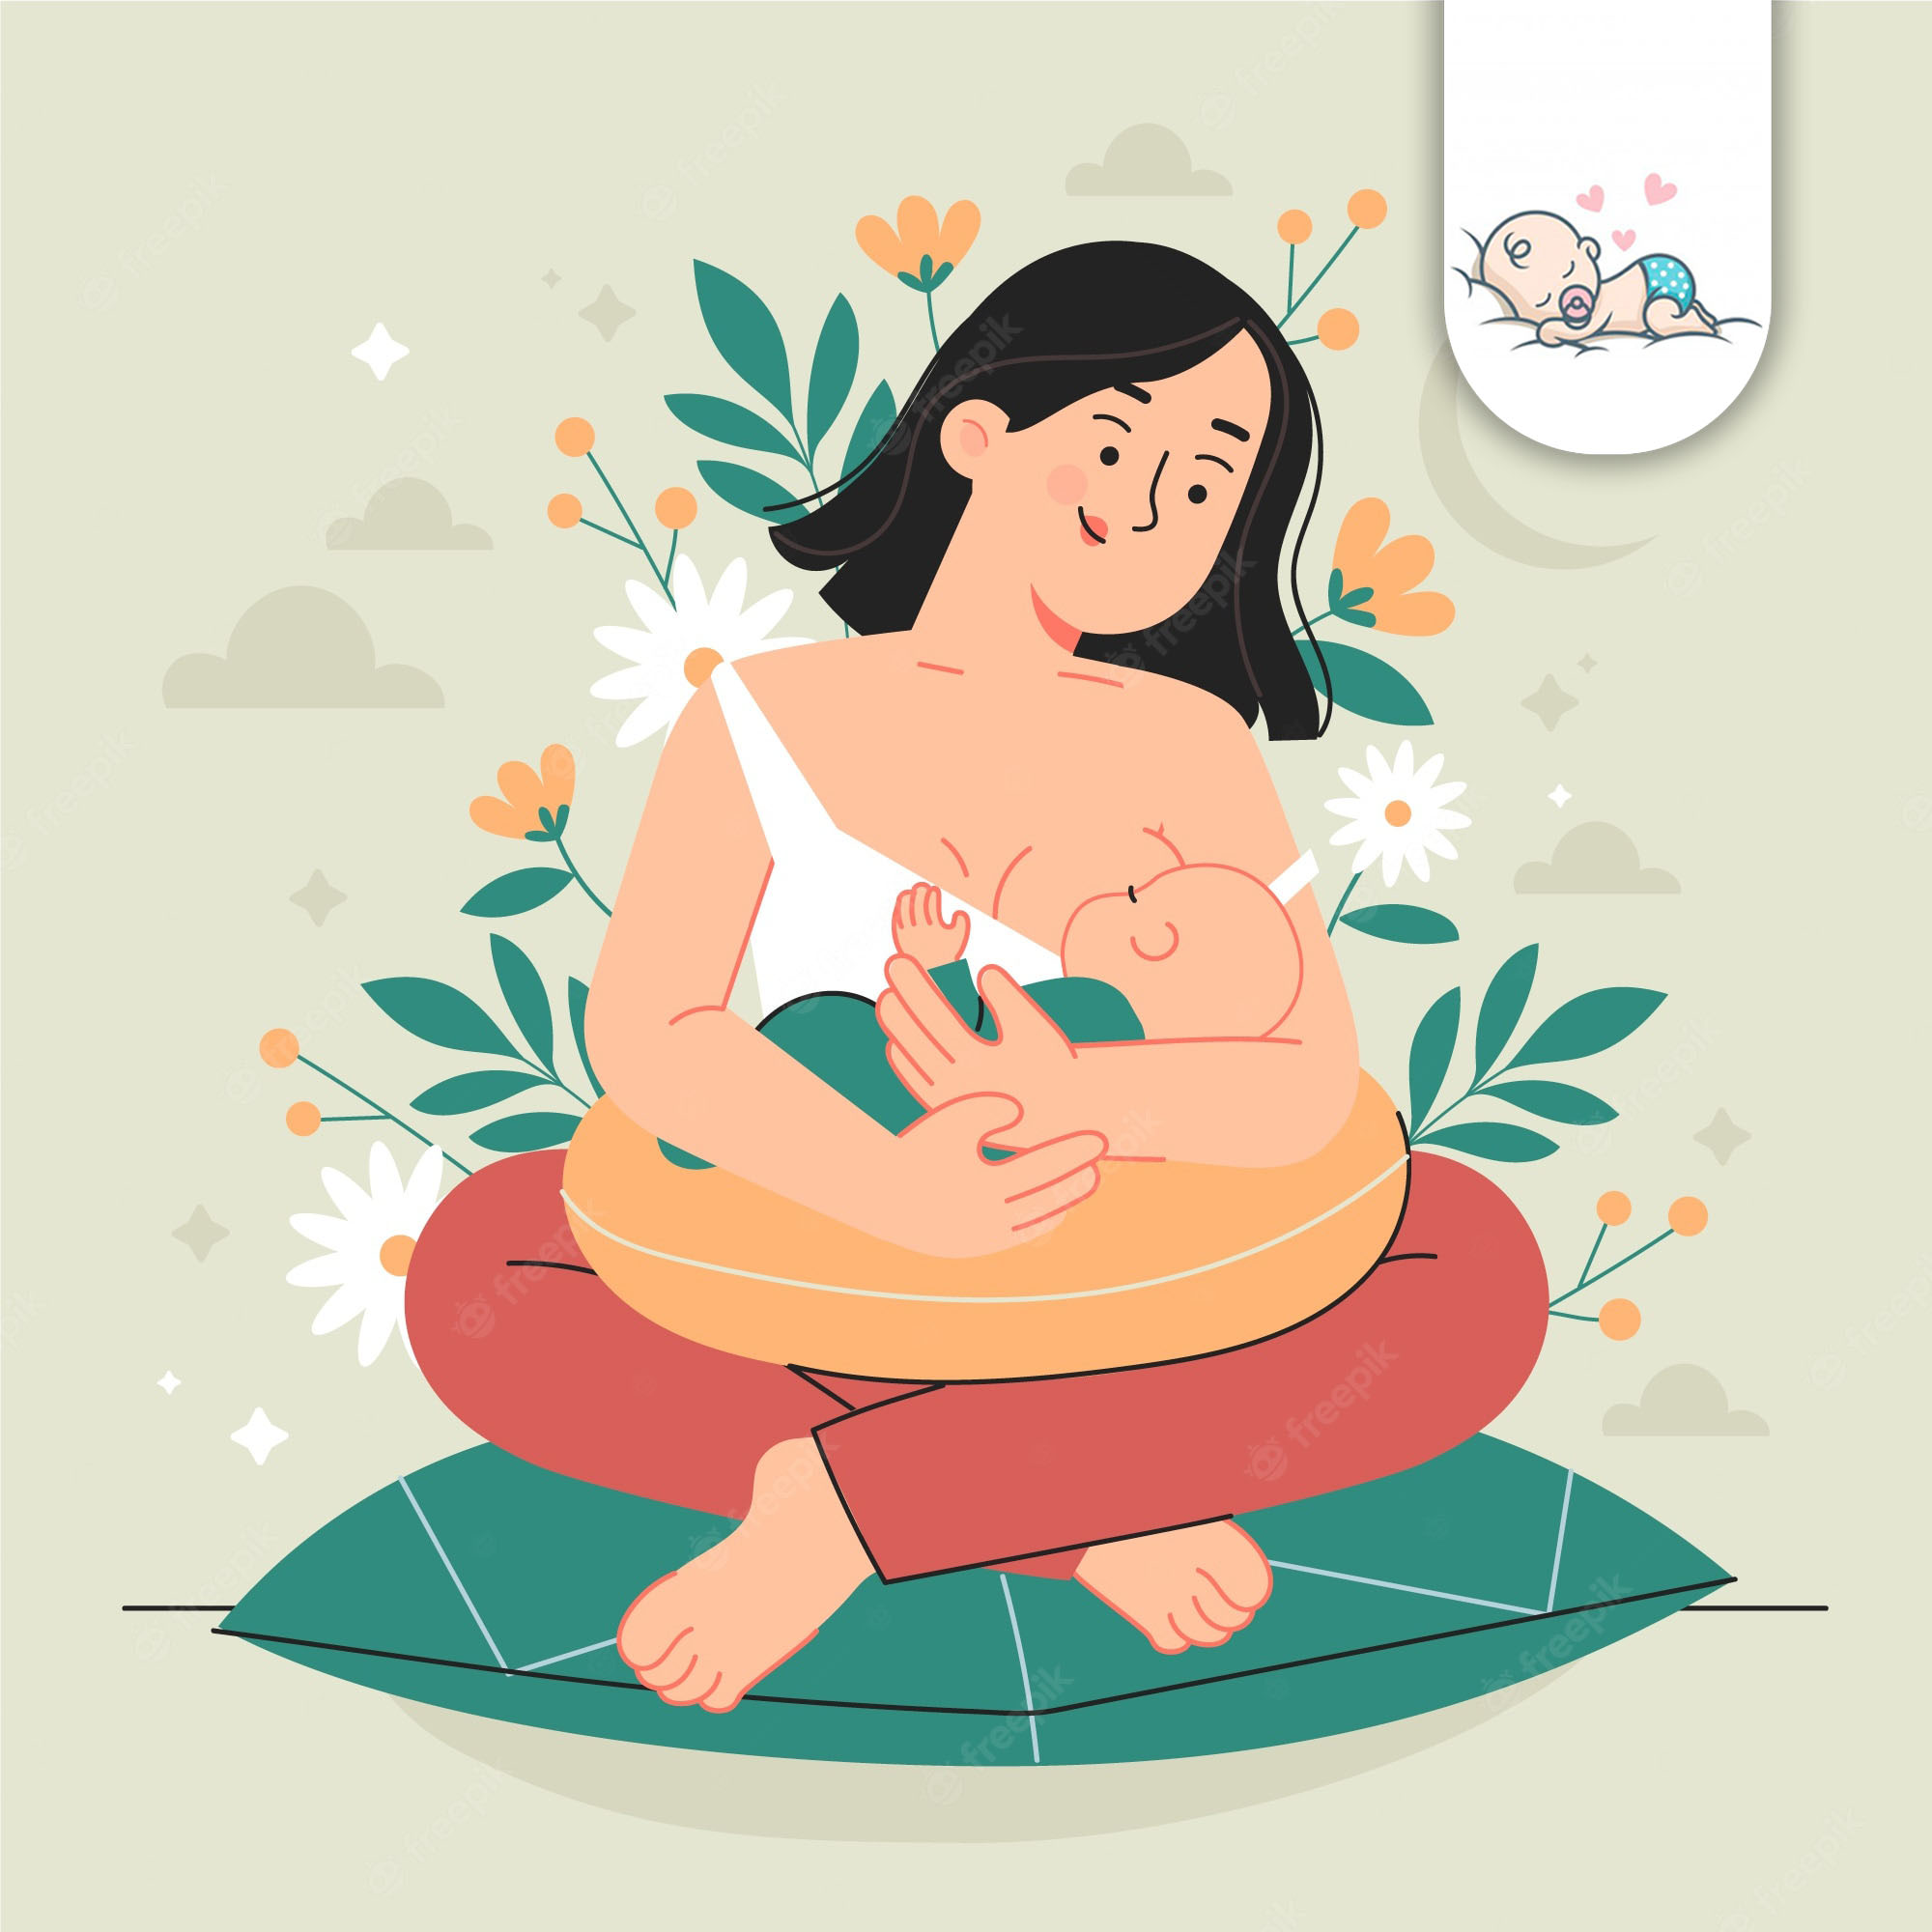 دوشیدن شیر مادر